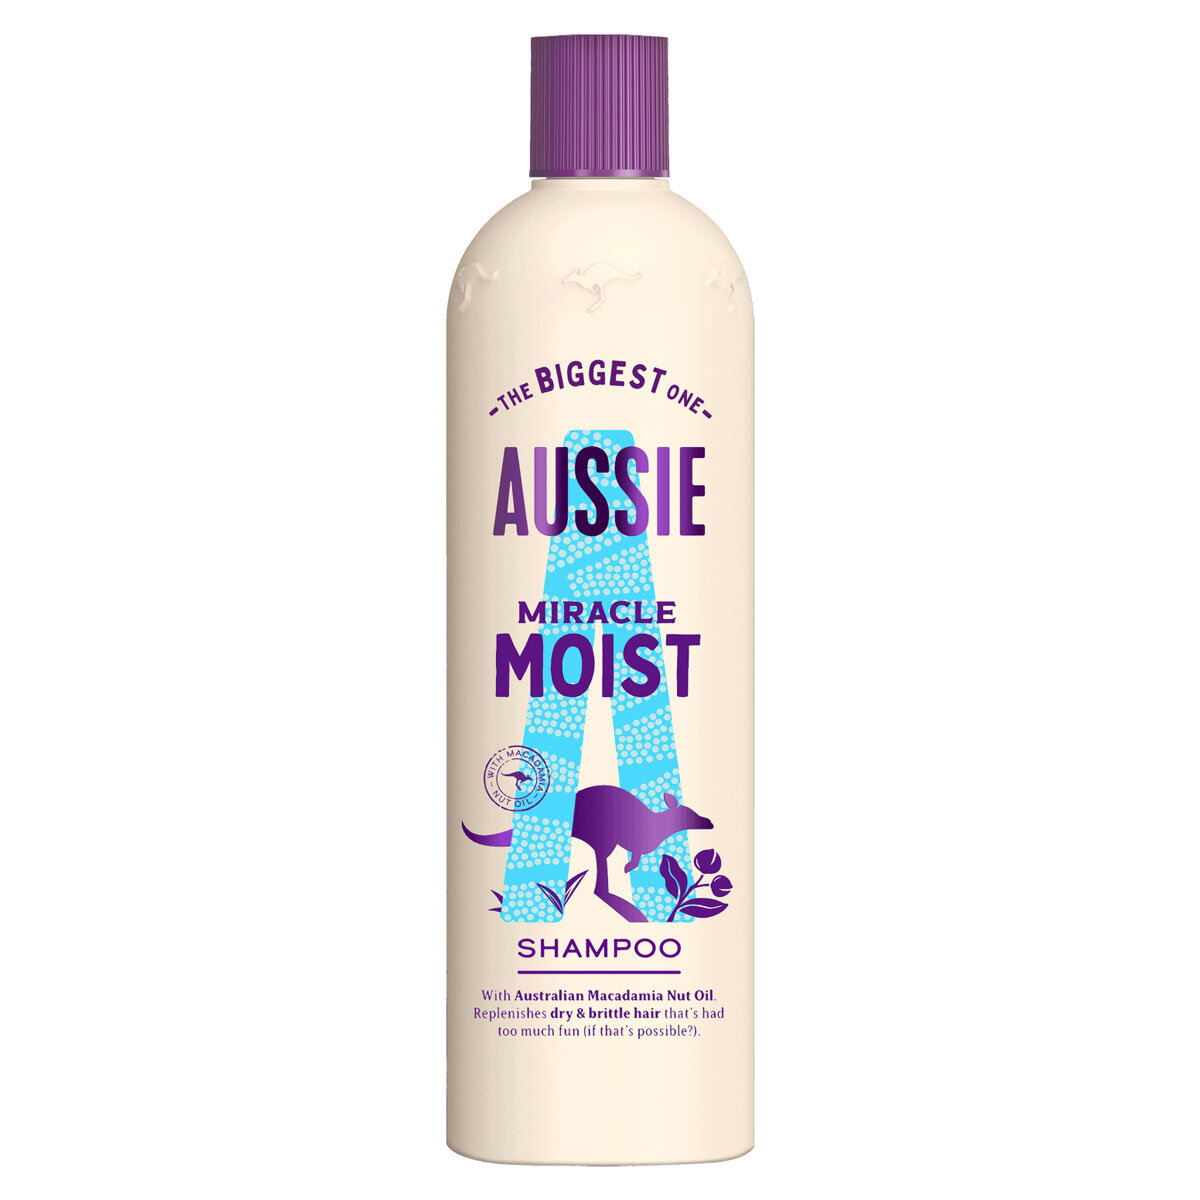 Aussie Miracle Moist Shampoo, 675ml